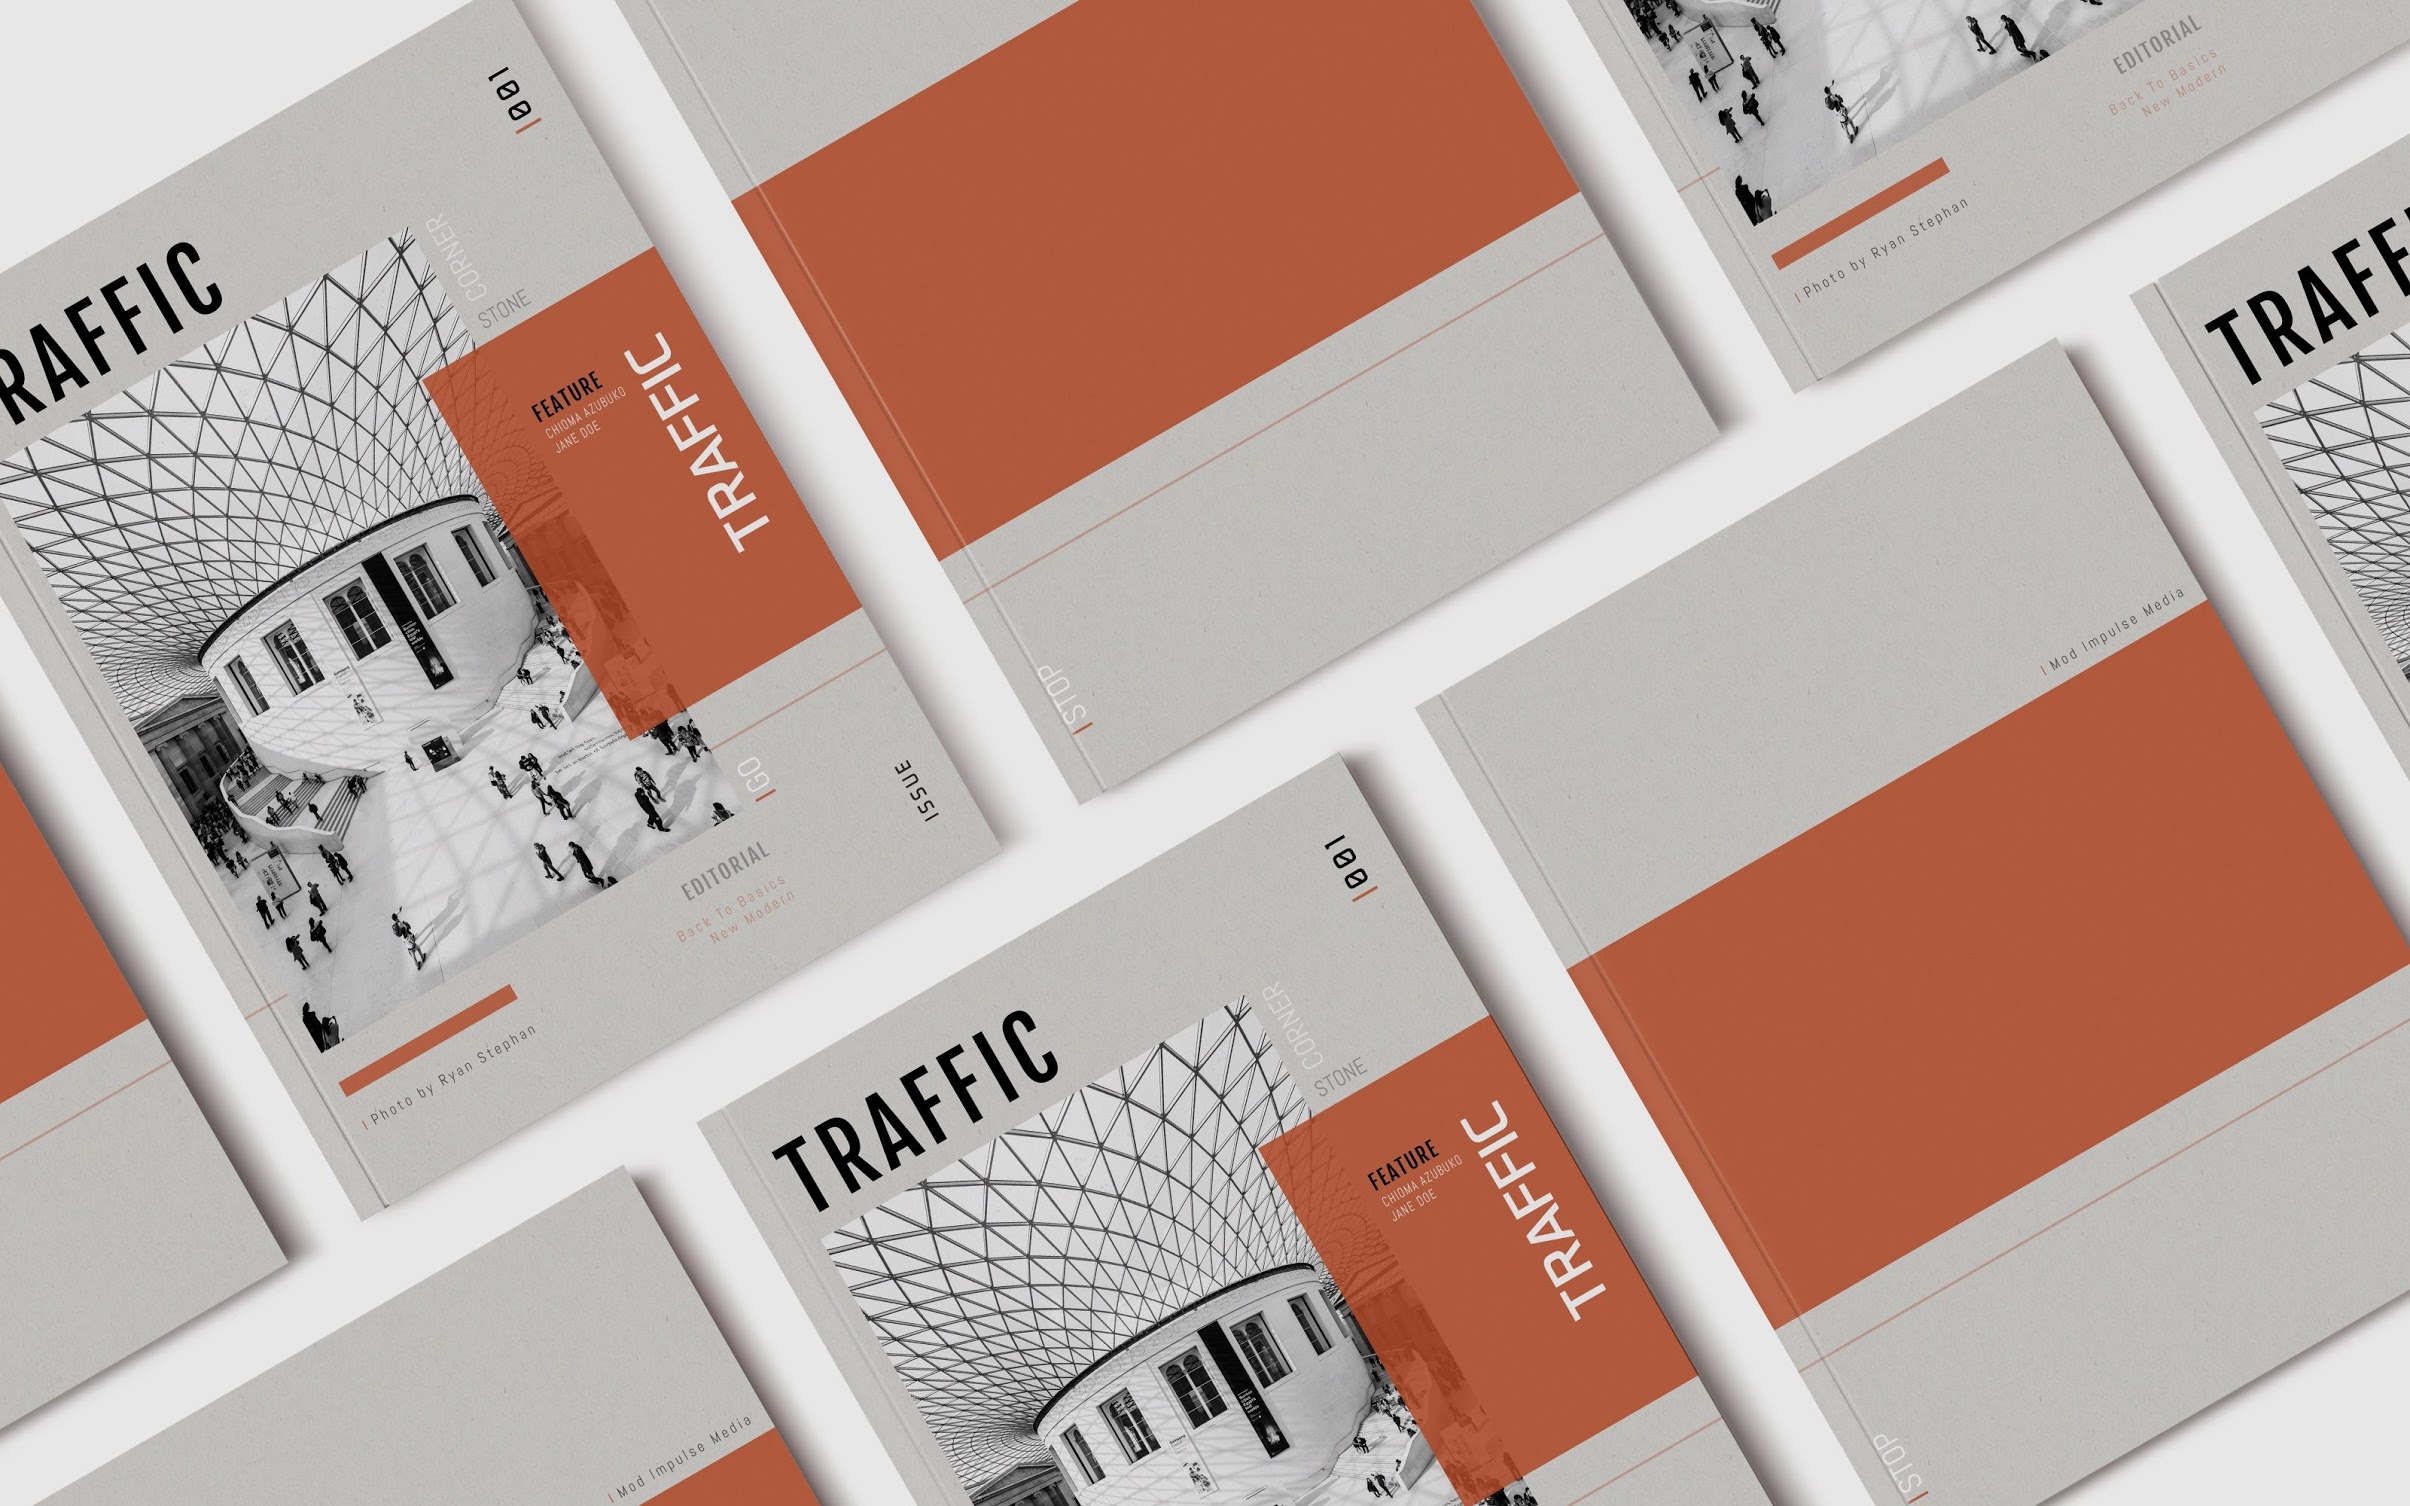 Traffic Editorial Magazine Design